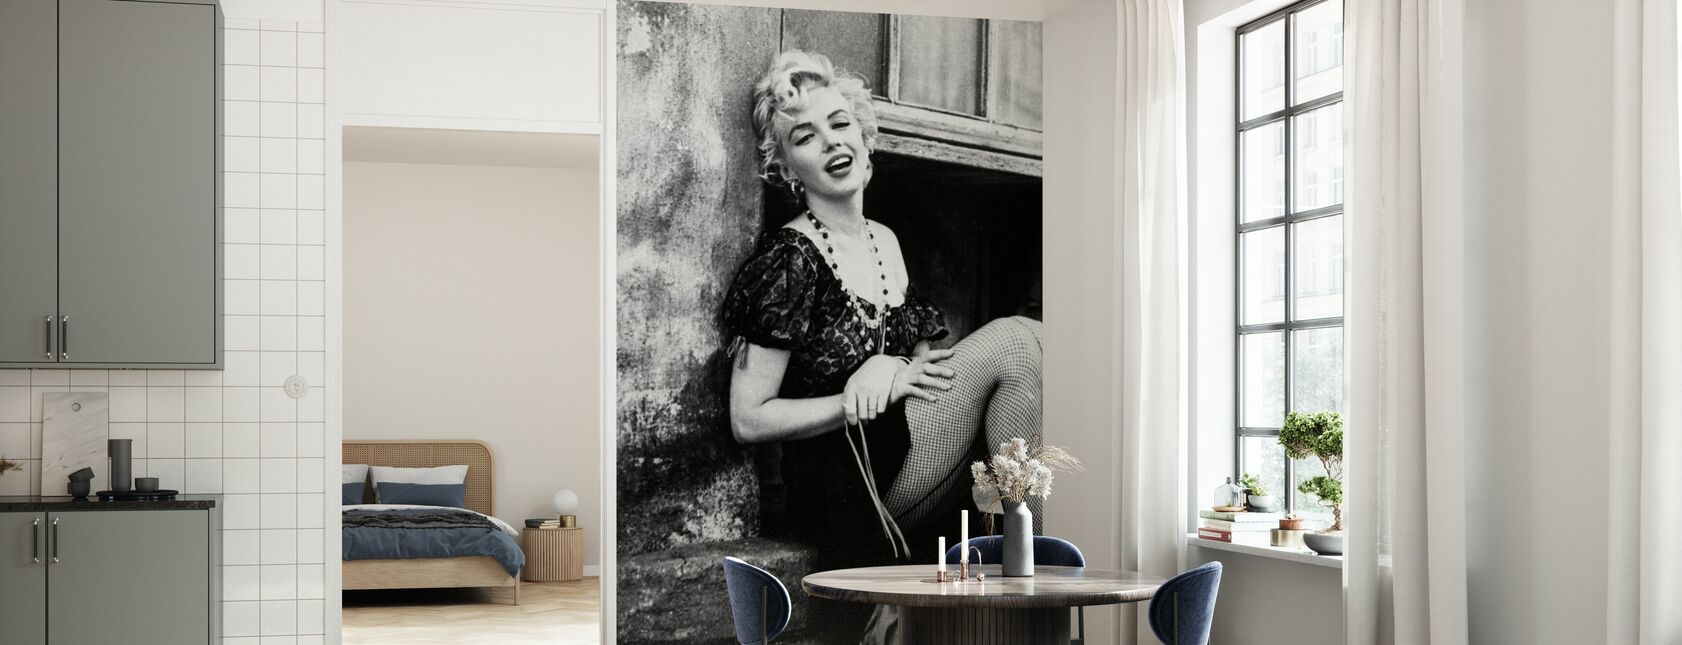 Marilyn Monroe dans l'arrêt de bus - Papier peint - Cuisine